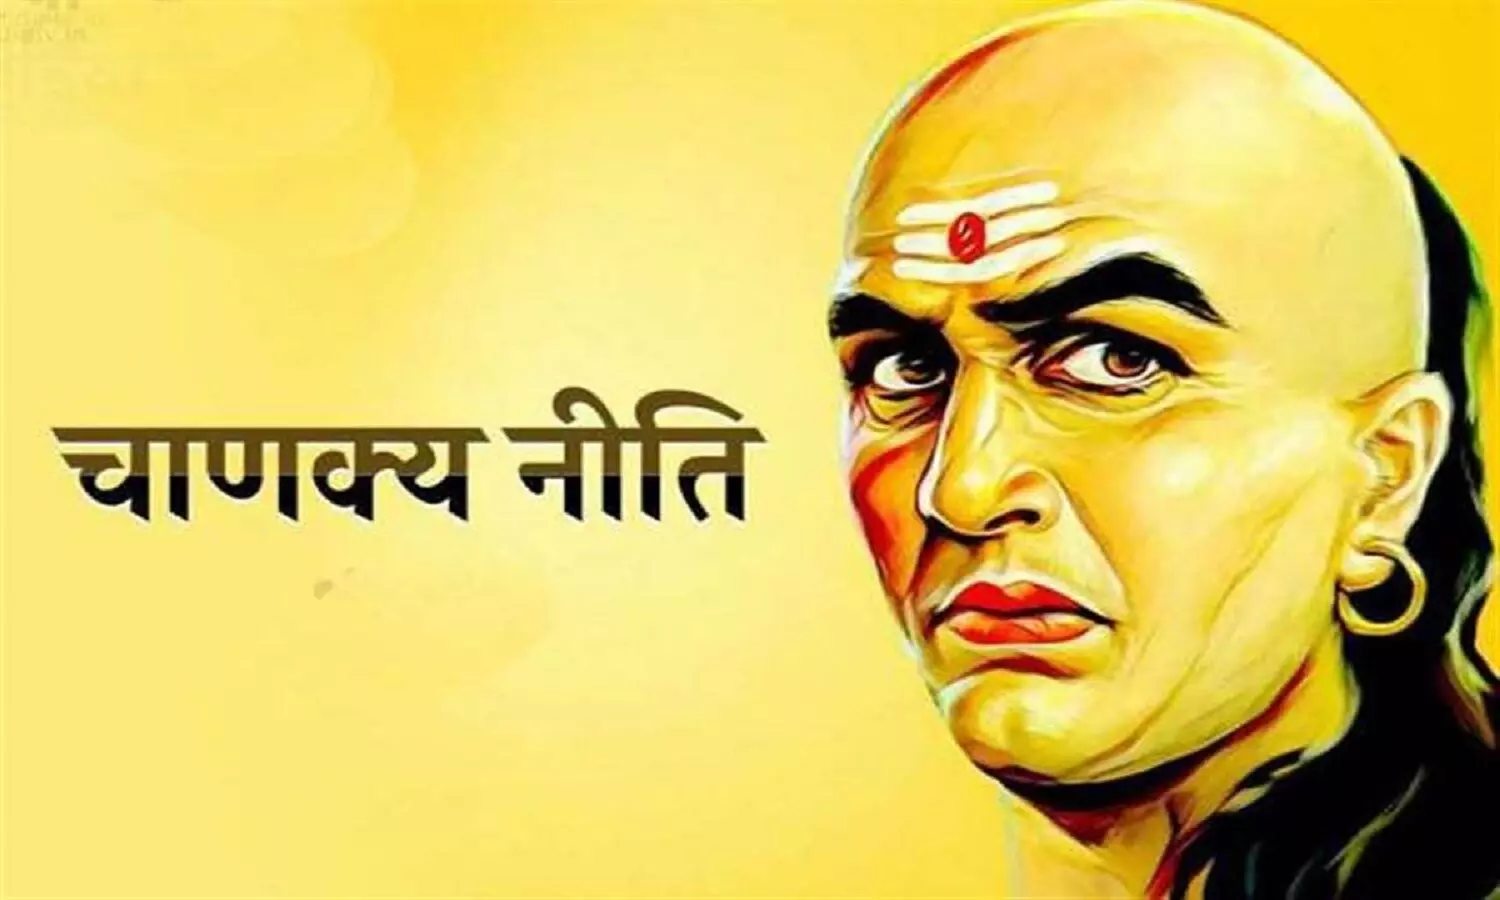 Chanakya Niti : आचार्य चाणक्य के अनुसार इन कार्यों से मिलती है तरक्की-समृद्धि